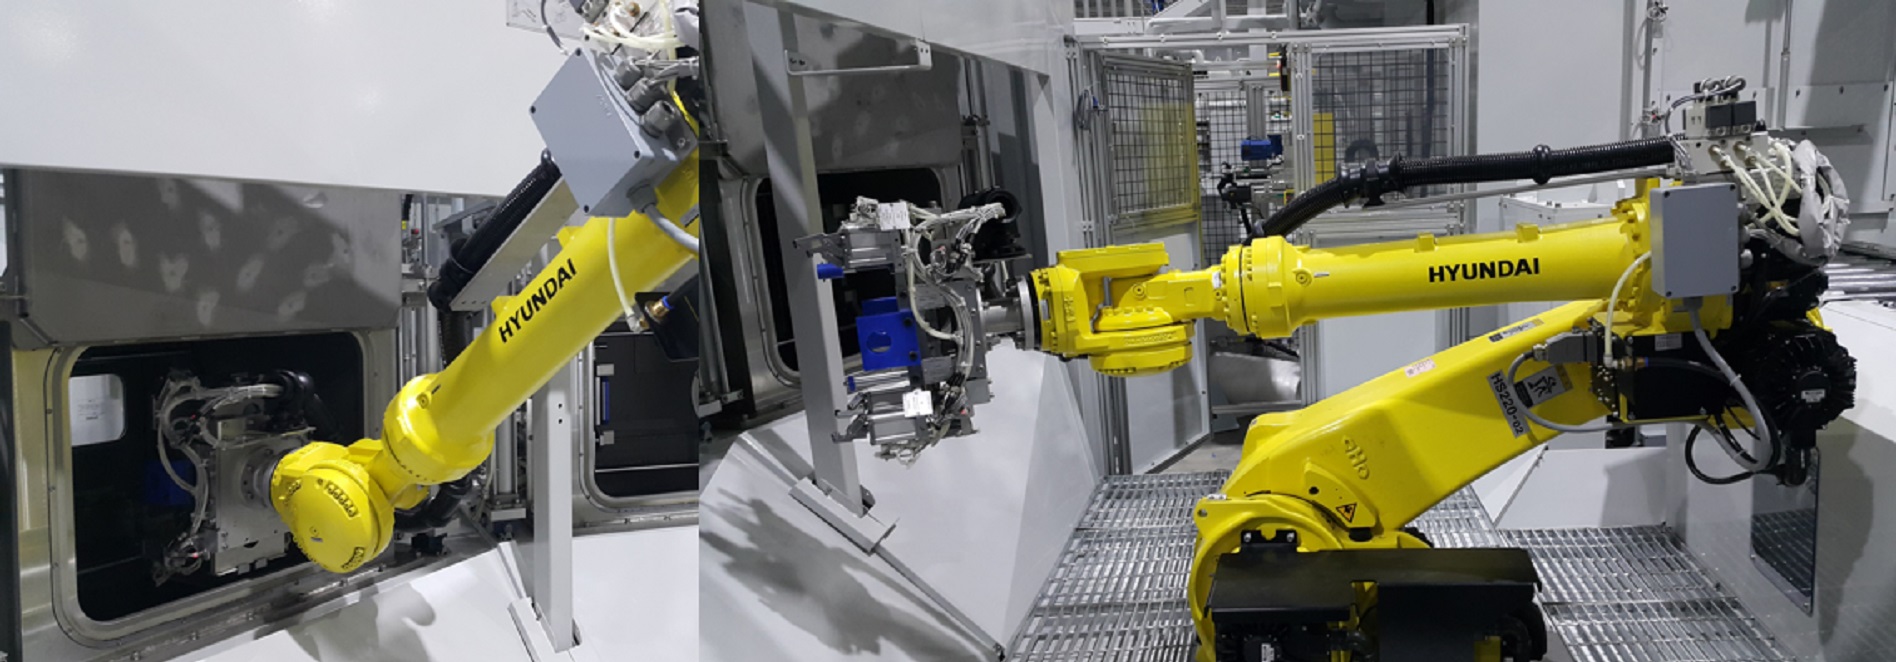 RAON ROBOTICS – Fanuc, Kuka, Hyundai Robot Teaching